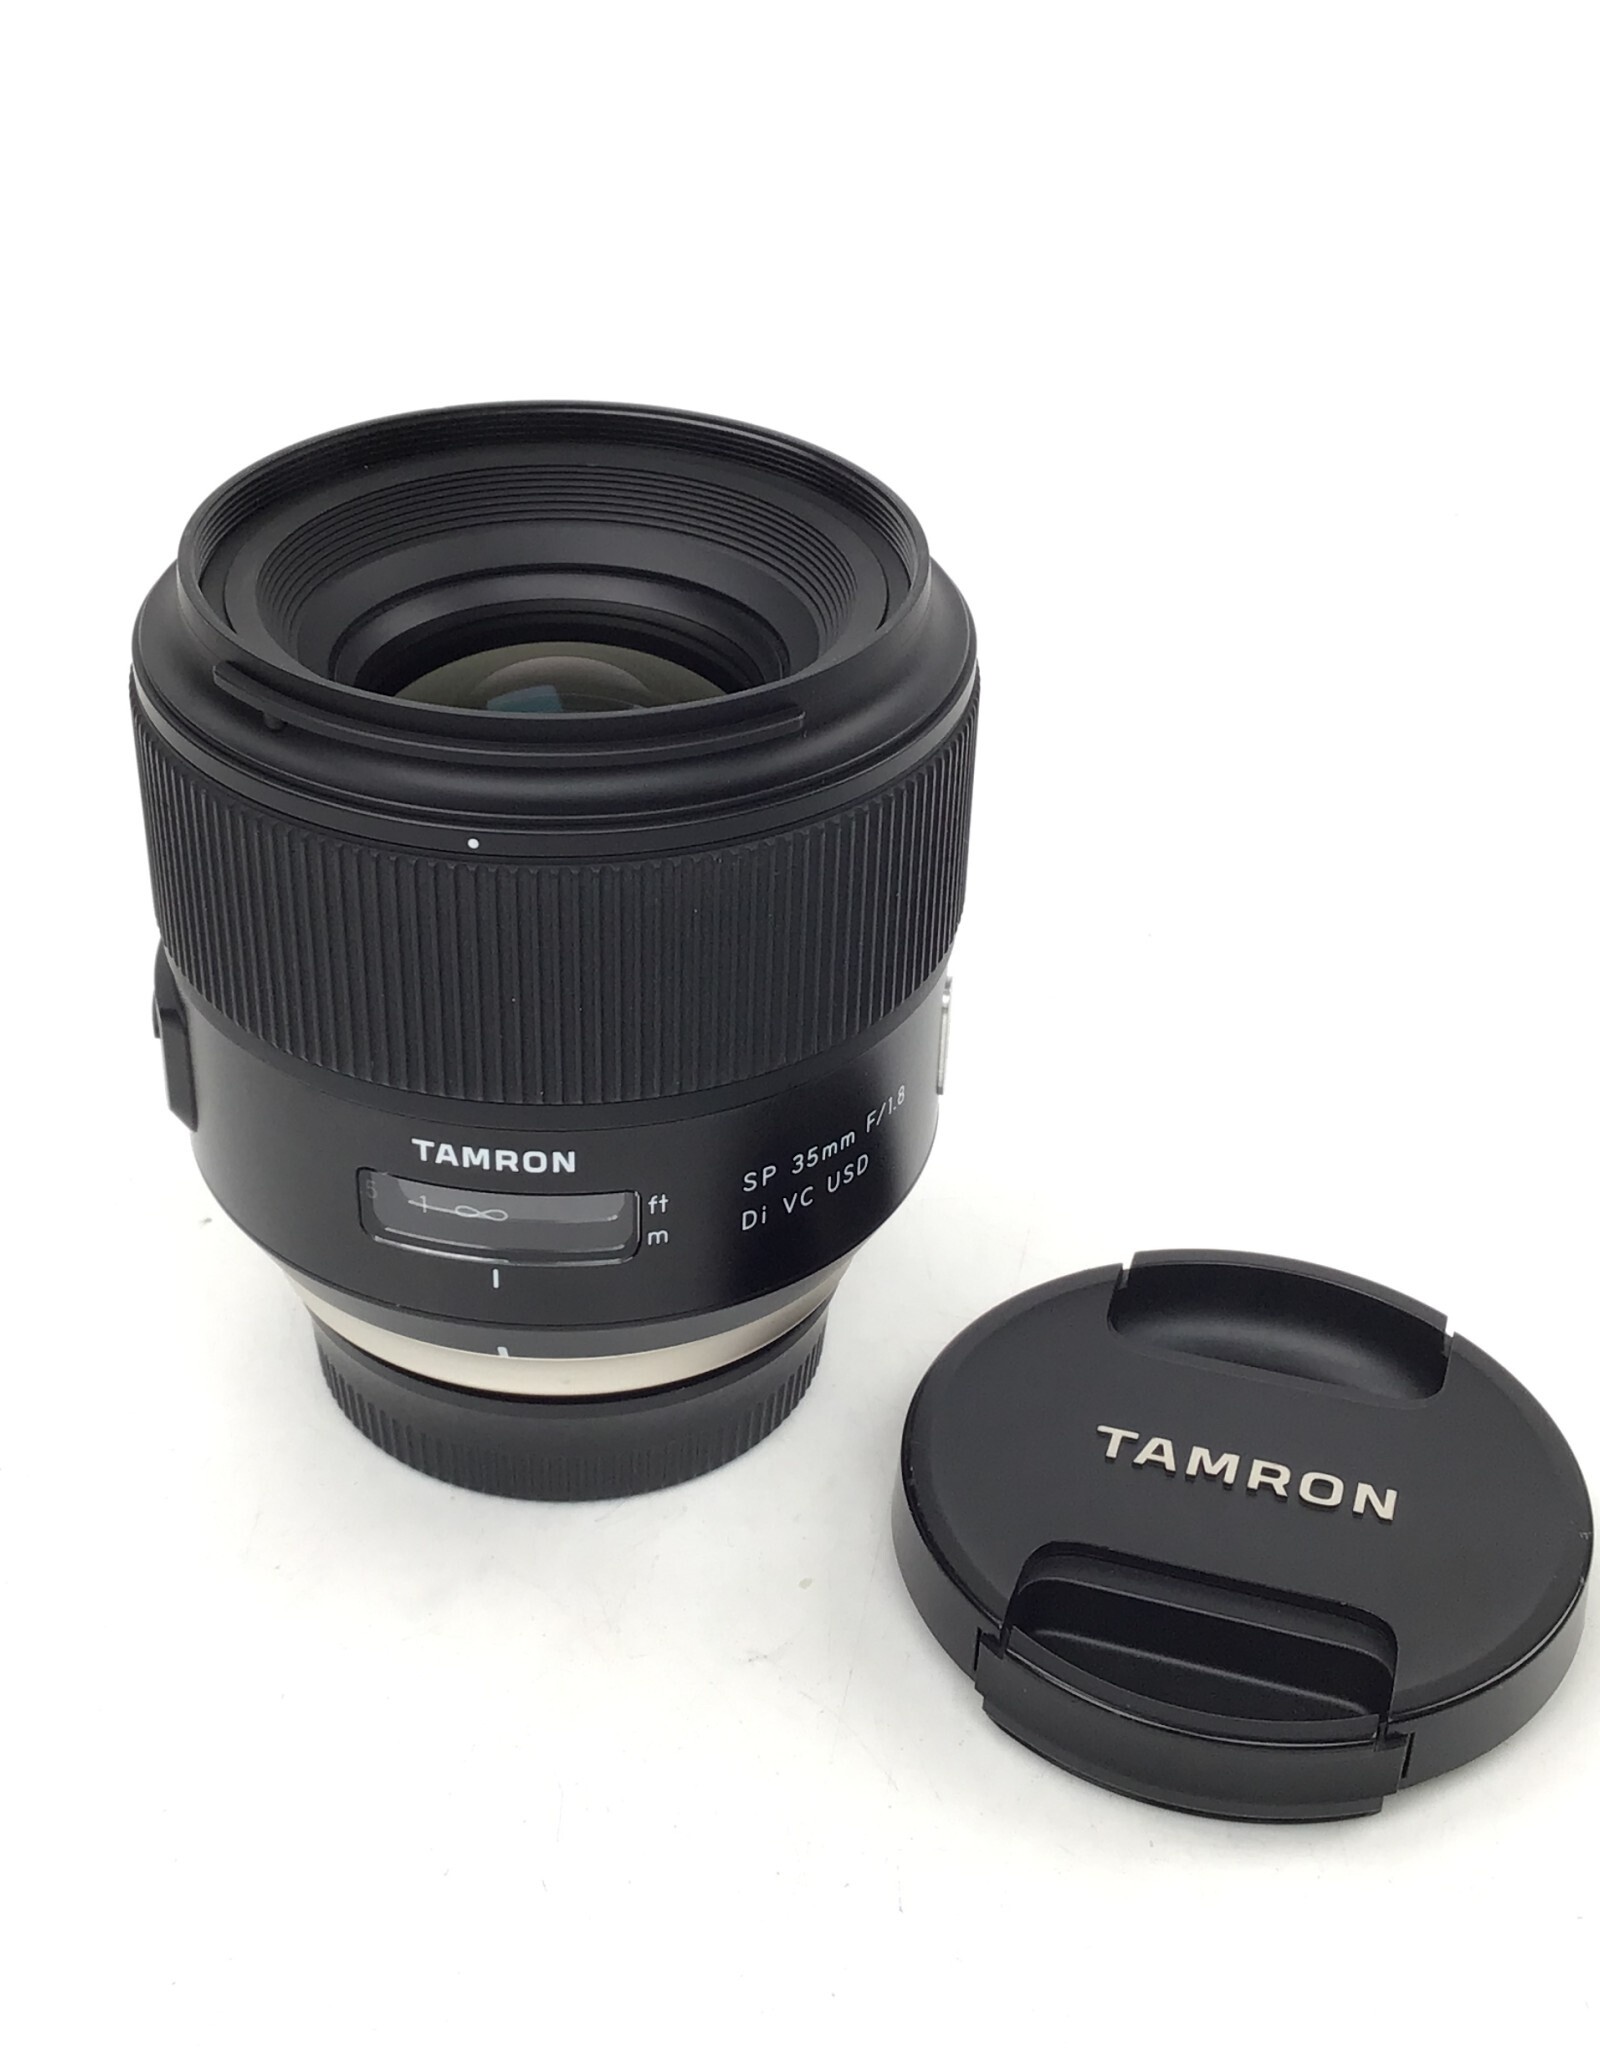 TAMRON Tamron 35mm 1.8 Di VC USD Nikon Mount Used Good